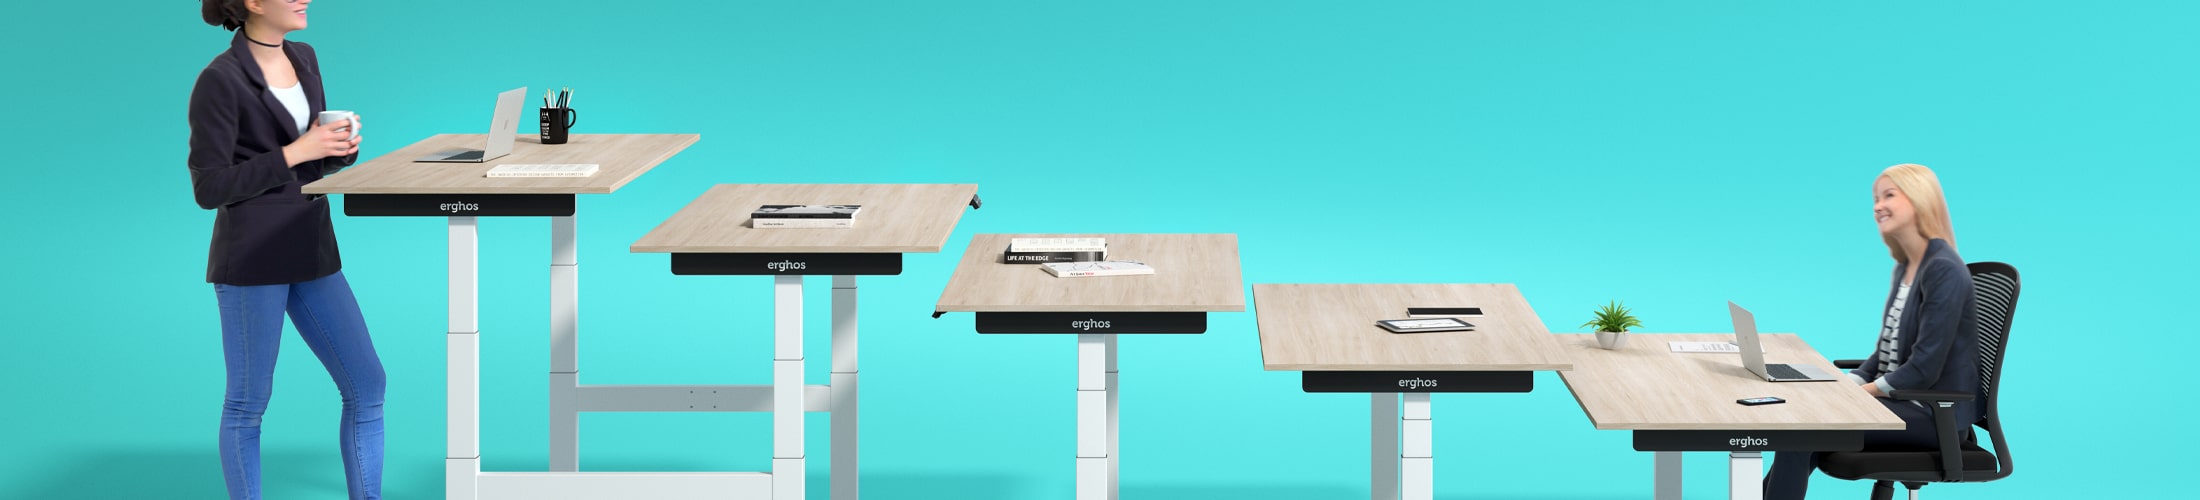 Wat is de ideale hoogte van een bureautafel?